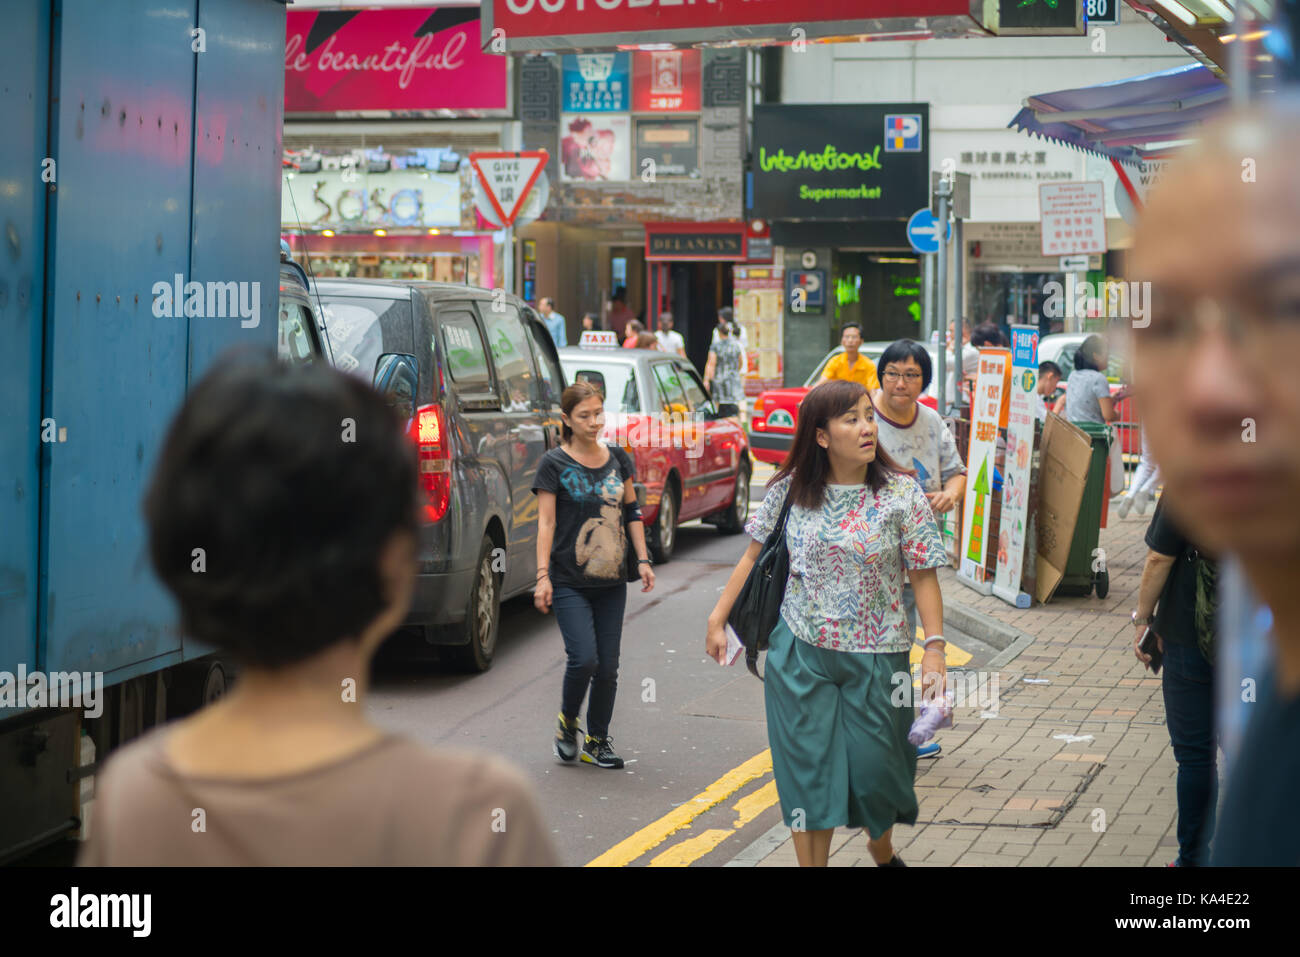 Hong kong, asia - agosto 2, 2017; alcune persone in parte al di fuori del telaio e la messa a fuoco, automobili, gli edifici e i segni nella trafficata strada movimentata scena tipicamente asiatici in Foto Stock